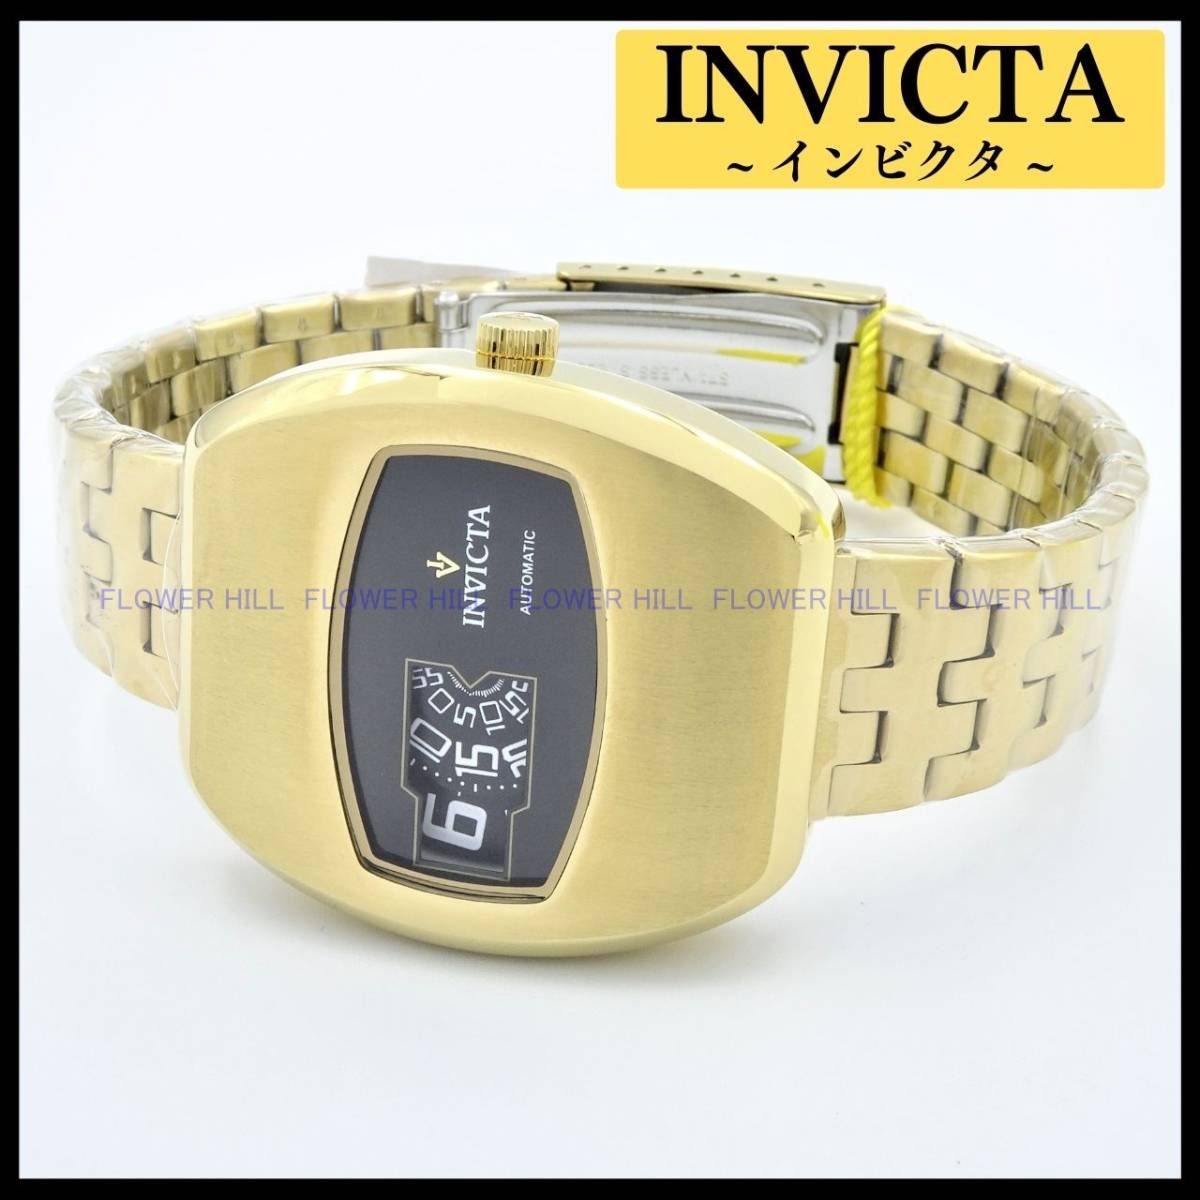 【新品・送料無料】インビクタ INVICTA 腕時計 ビンテージ VINTAGE 39976 自動巻き 機械式 ゴールド メタルバンド